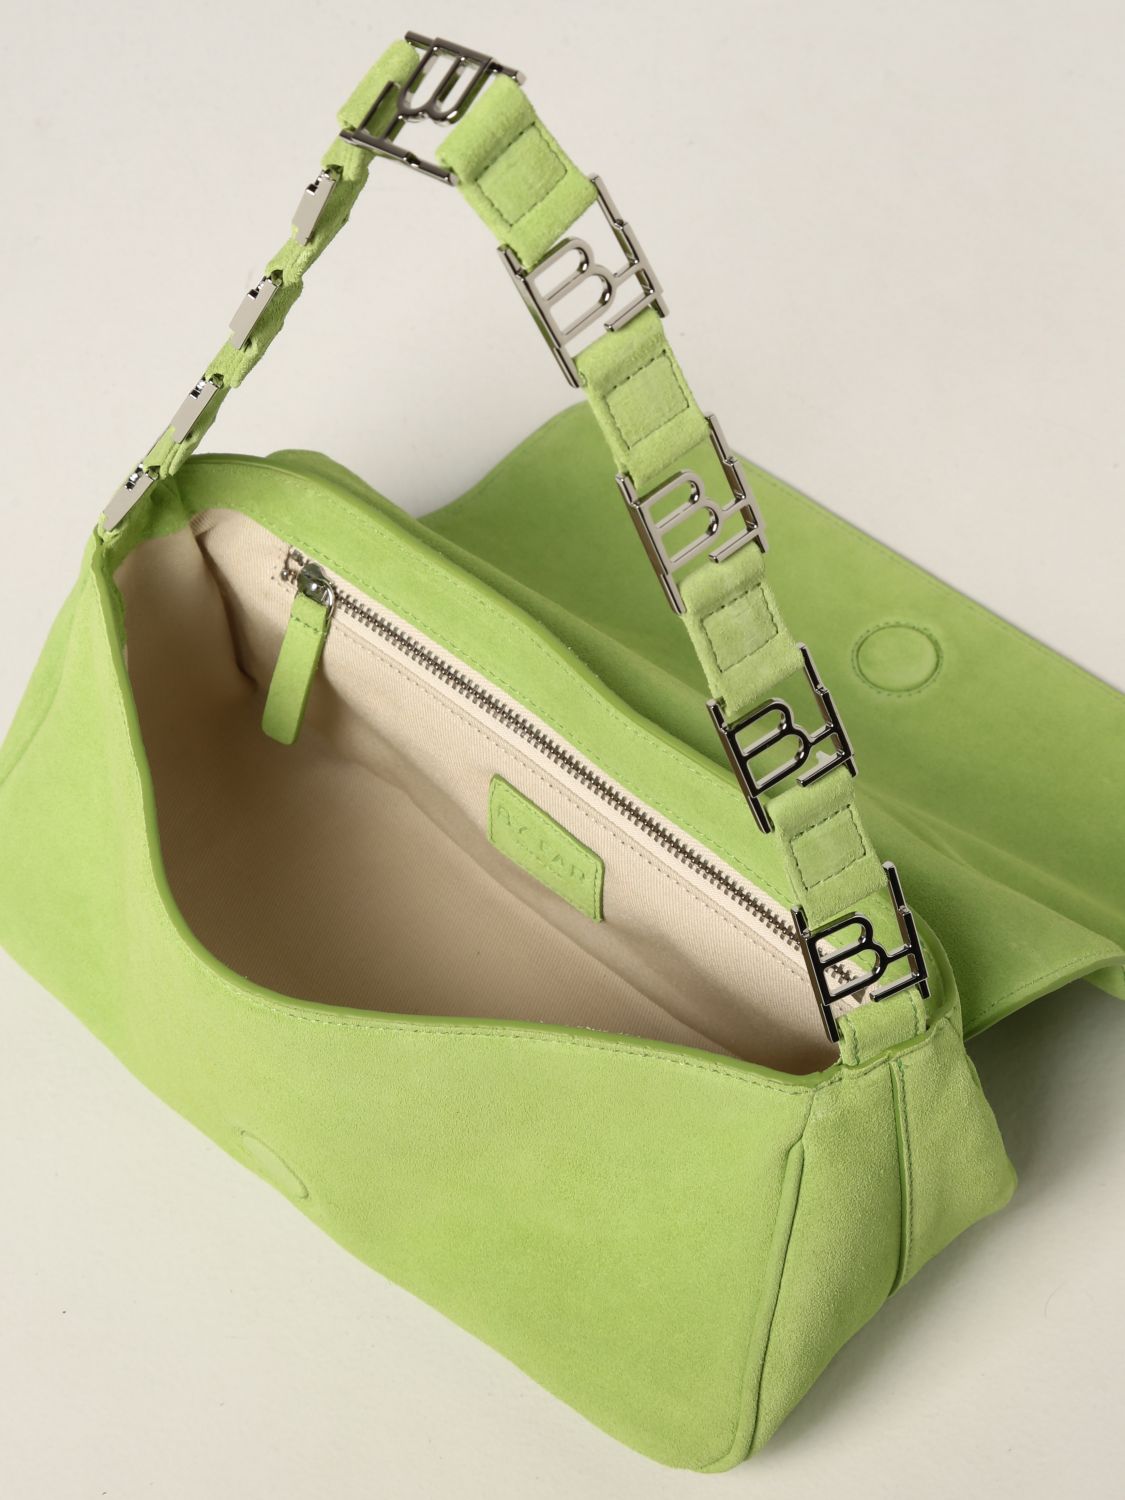 Handbag By Far: Daisy By Far bag in suede green 5